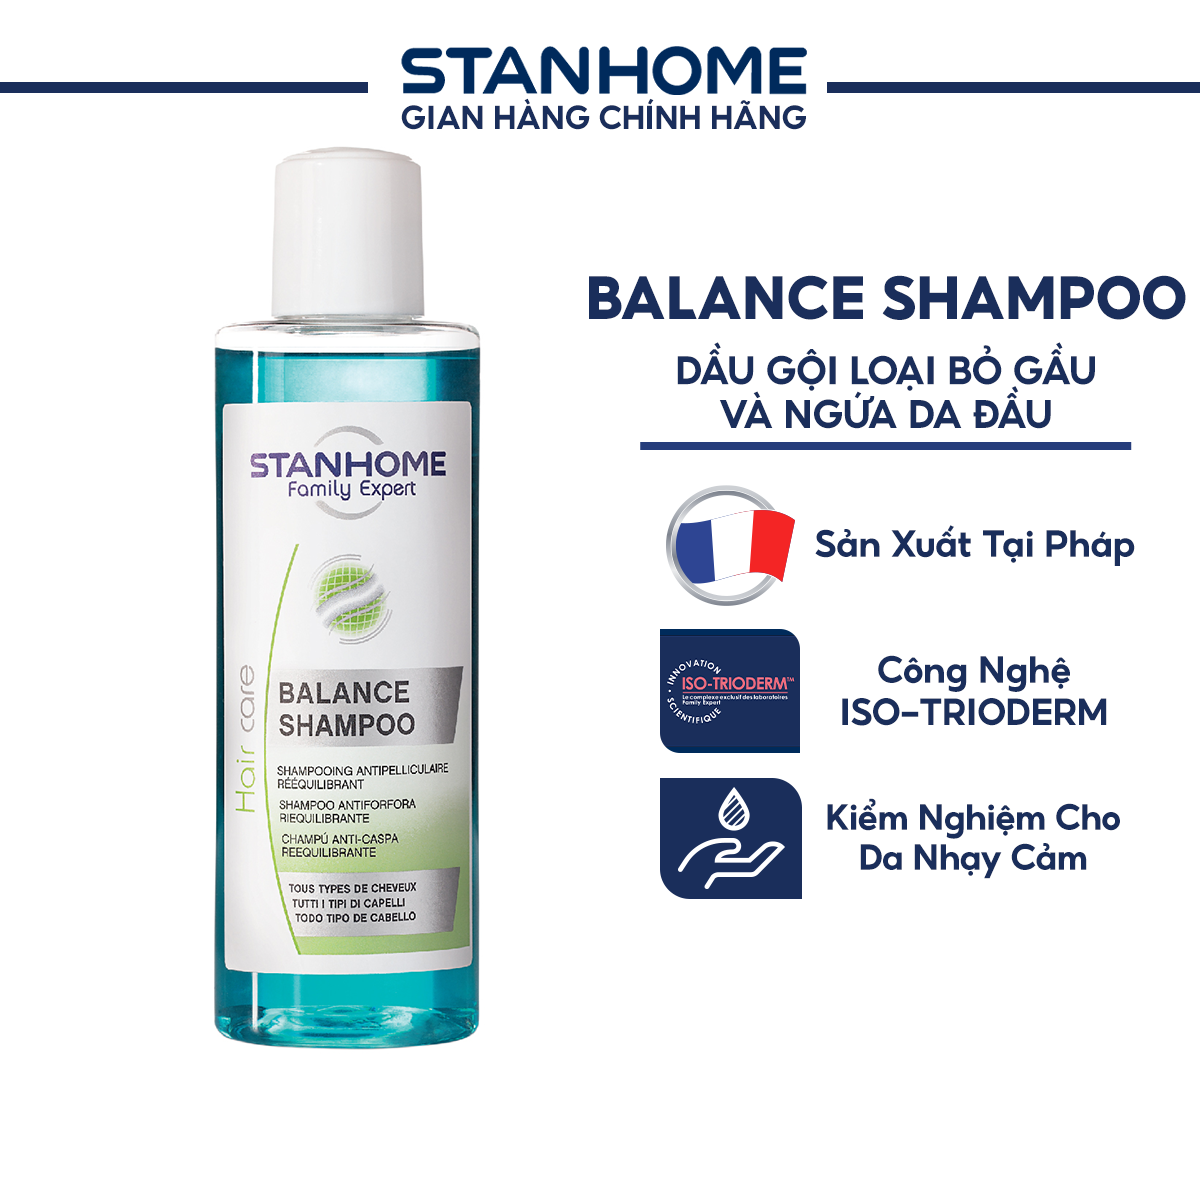 Dầu Gội Stanhome Balance Shampoo Giảm Ngứa Da Đầu Và Loại Bỏ Gàu Hiệu Quả